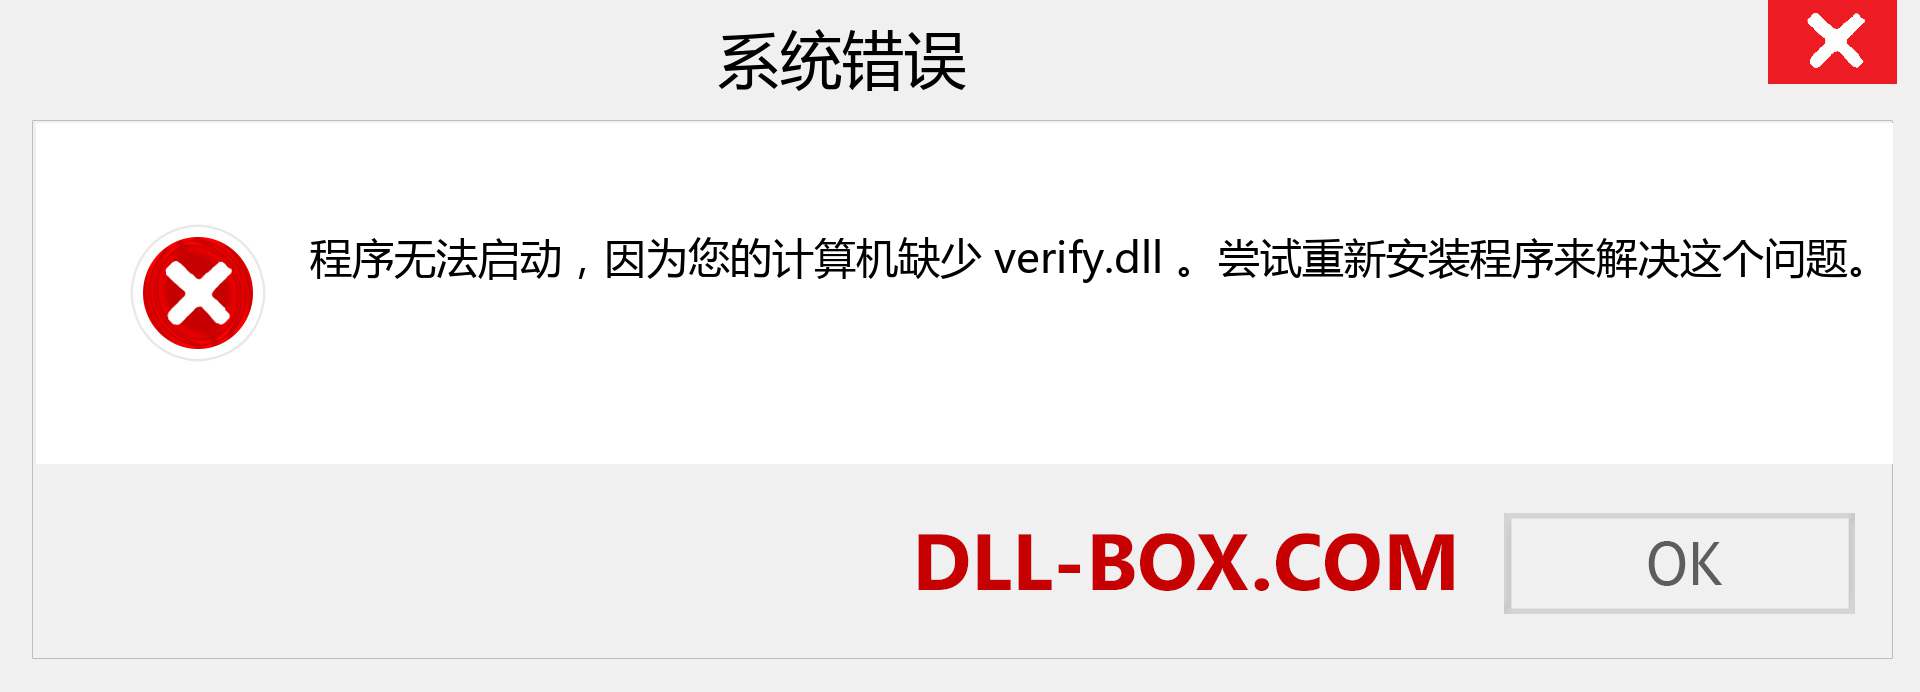 verify.dll 文件丢失？。 适用于 Windows 7、8、10 的下载 - 修复 Windows、照片、图像上的 verify dll 丢失错误